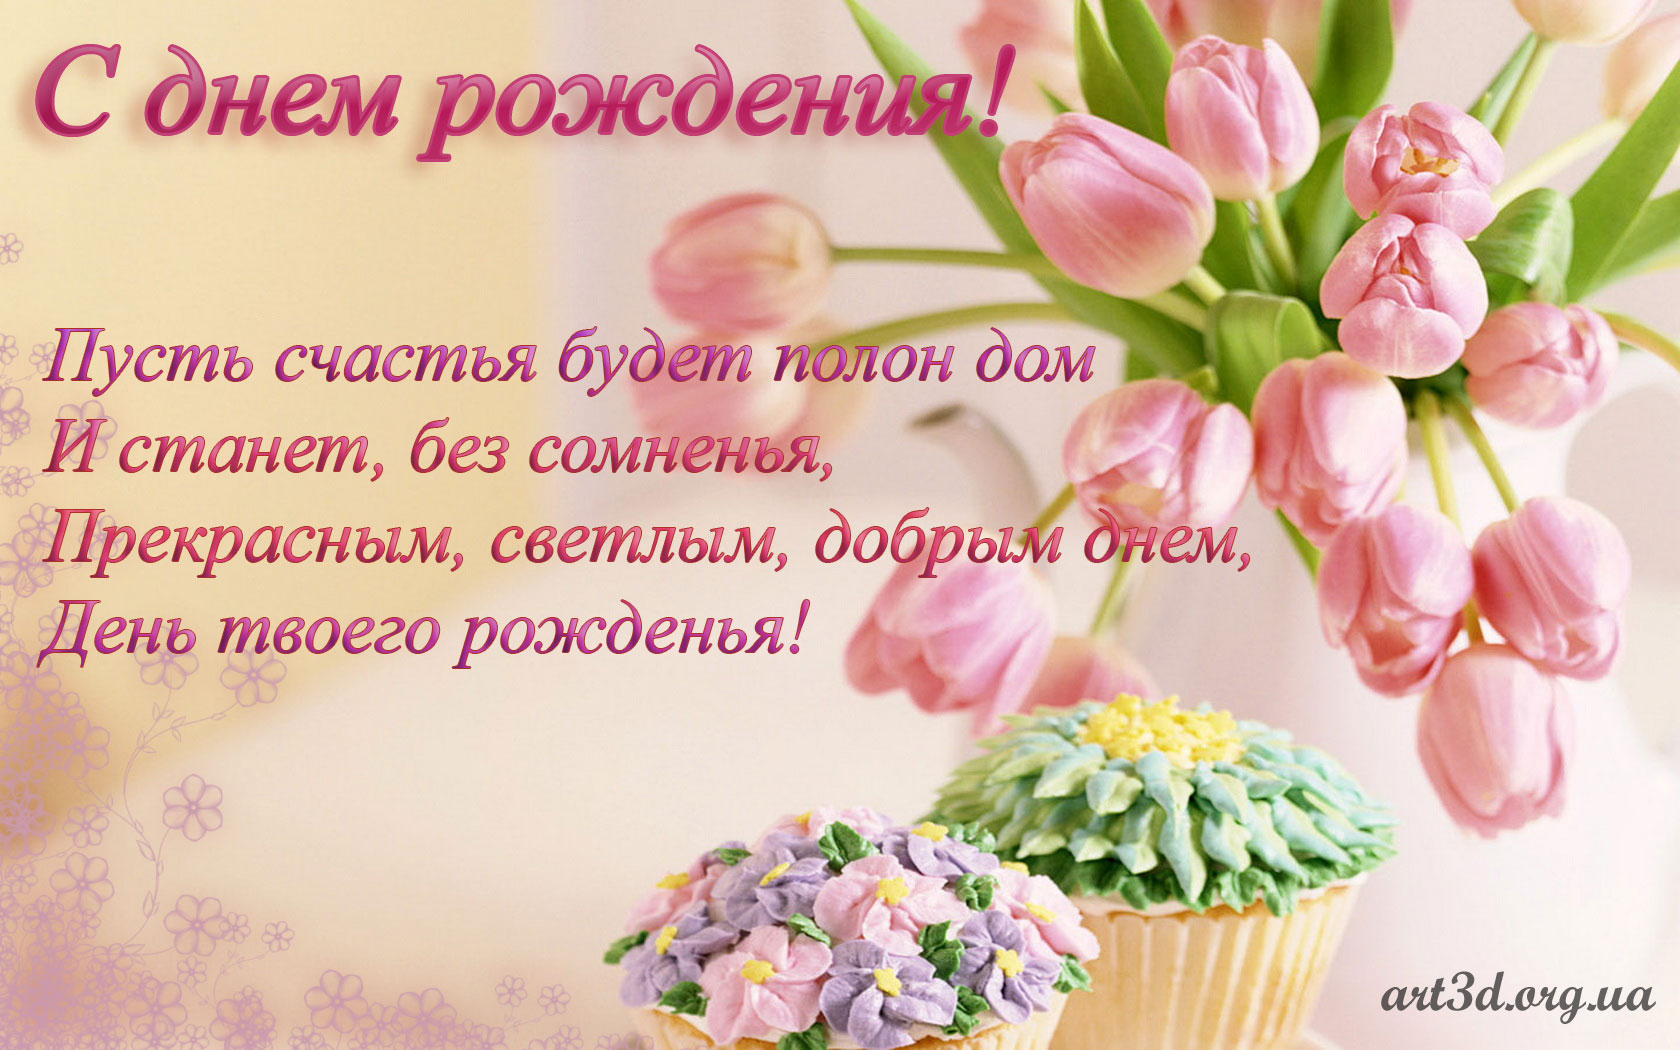 Поздравляем с Днем Рождения Ларису Борисовну! Index